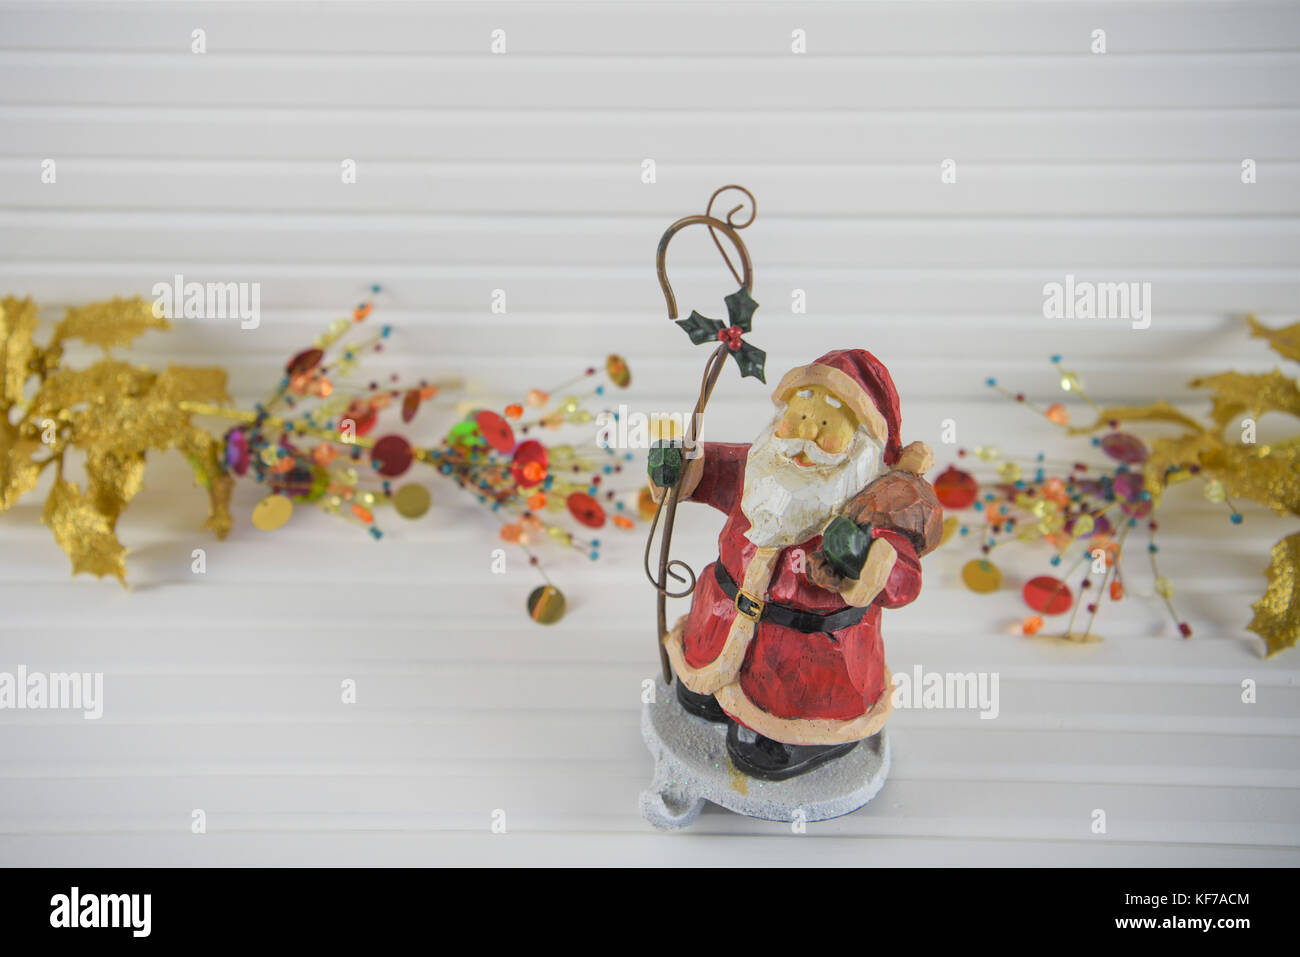 Fröhlich bunte Weihnachten fotografie Bild der traditionellen Holz santa stocking Kleiderbügel Haken mit gold Rot hell Holly und xmas Schmuckstücke im Hintergrund Stockfoto